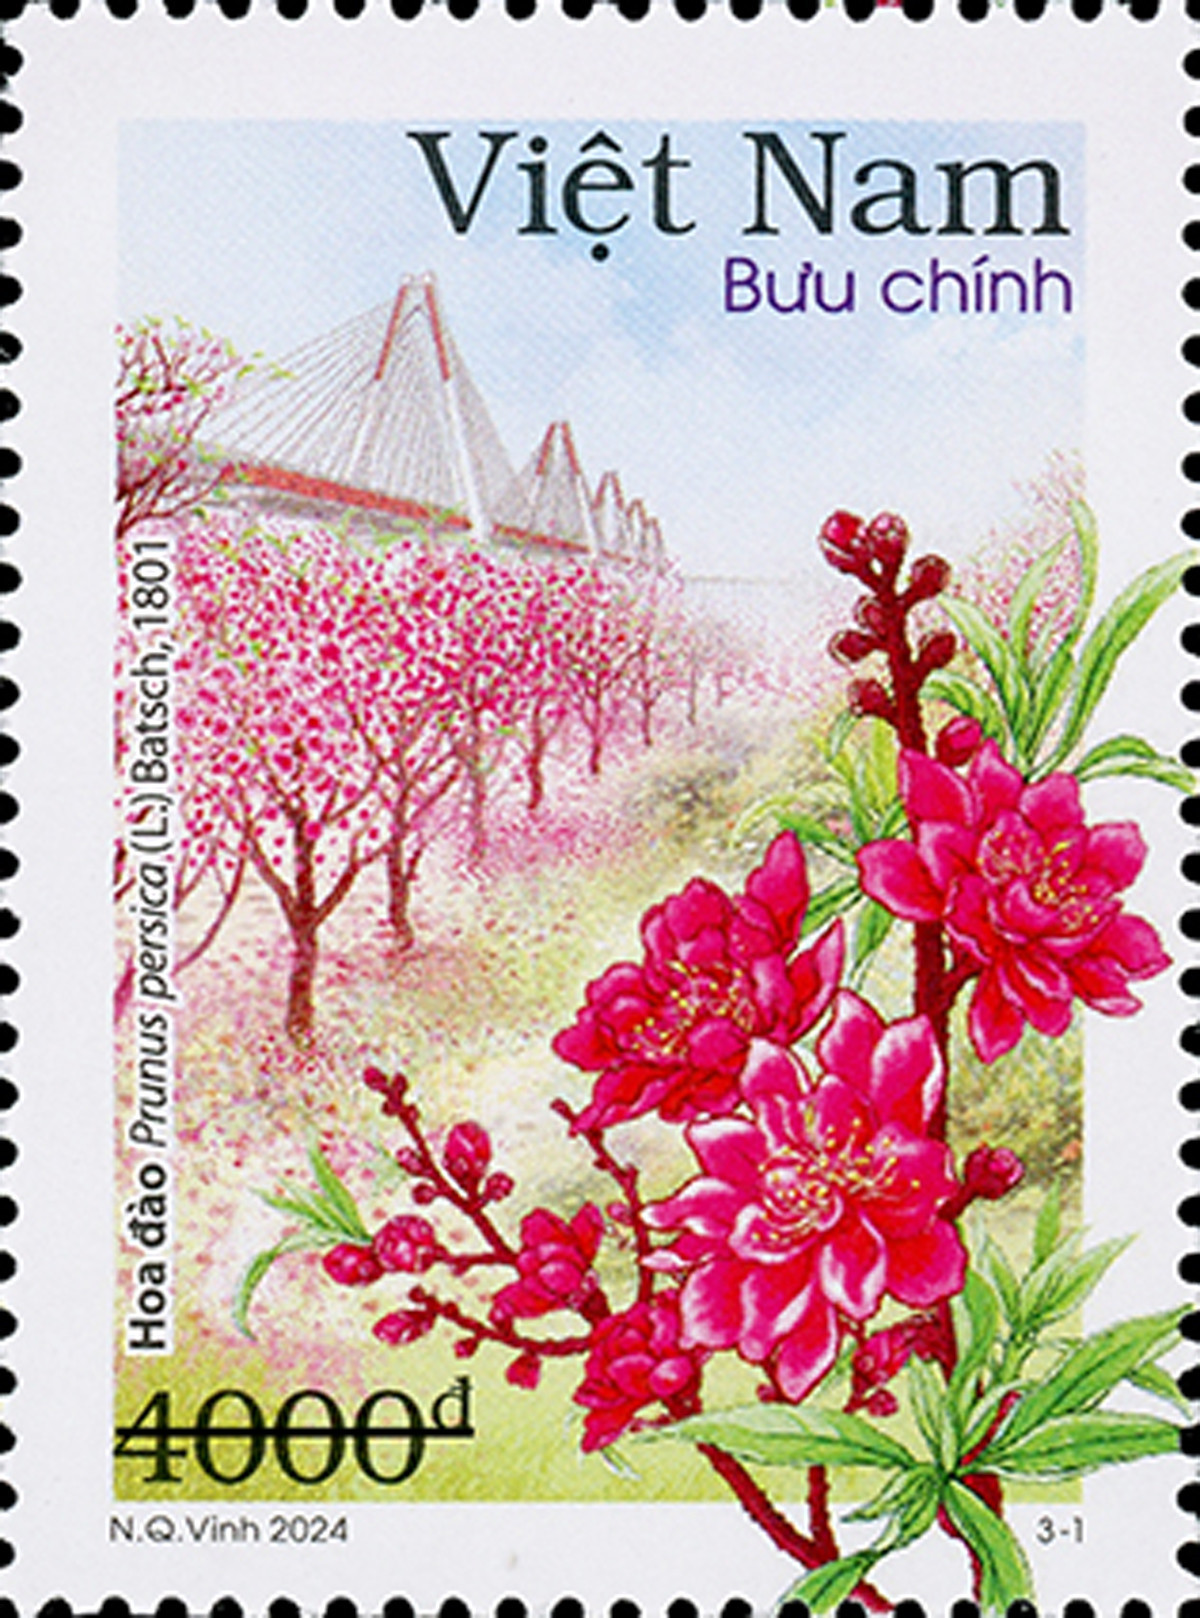 [Tin công nghệ] 12 mùa hoa của Hà Nội lên tem bưu chính